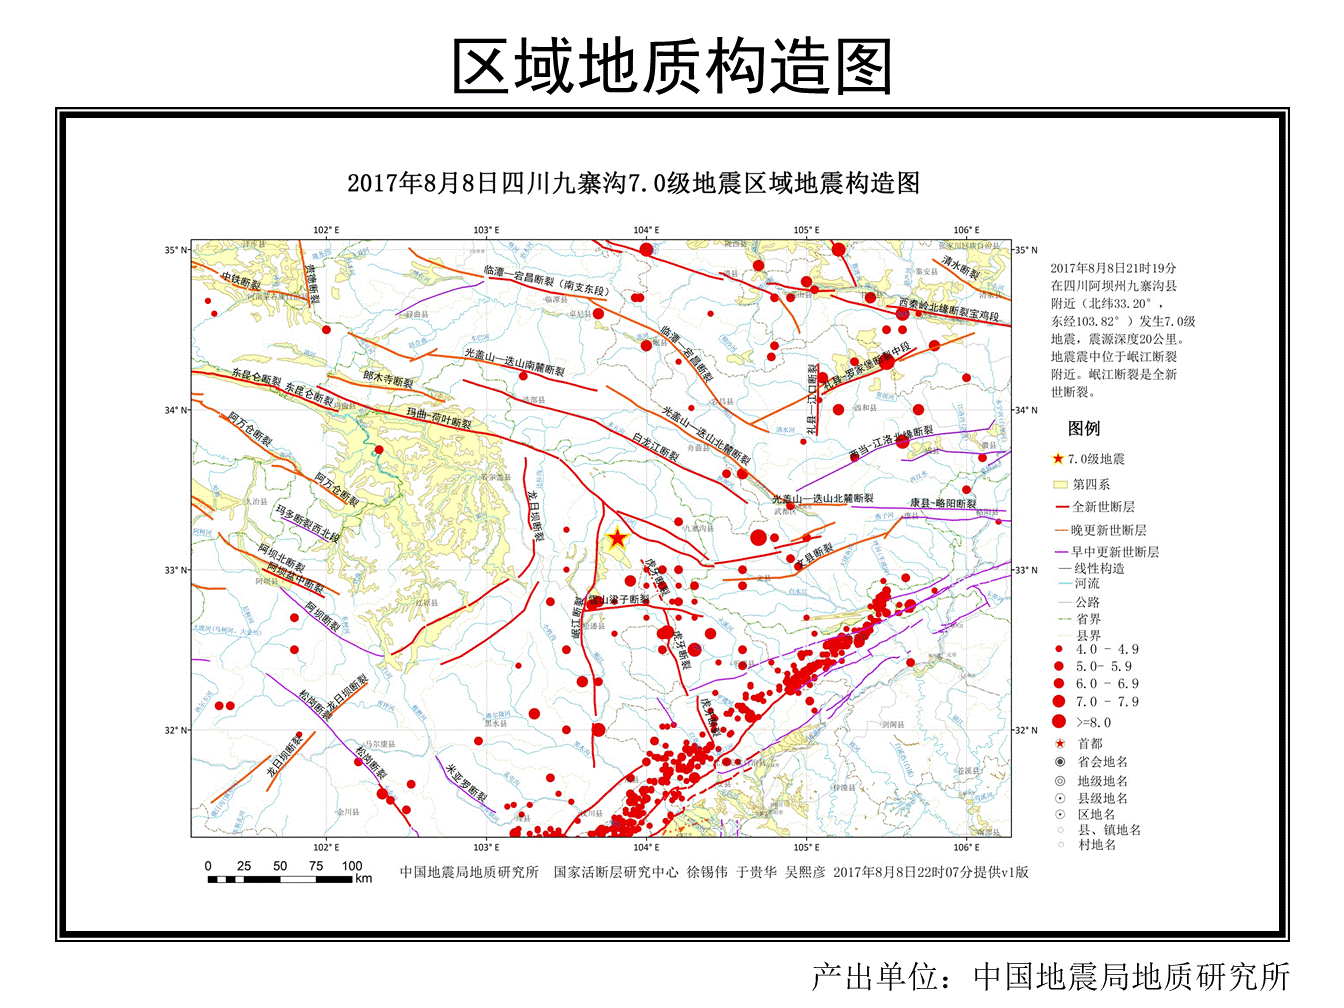 四川發生6級地震 至少兩死三傷 | Now 新聞